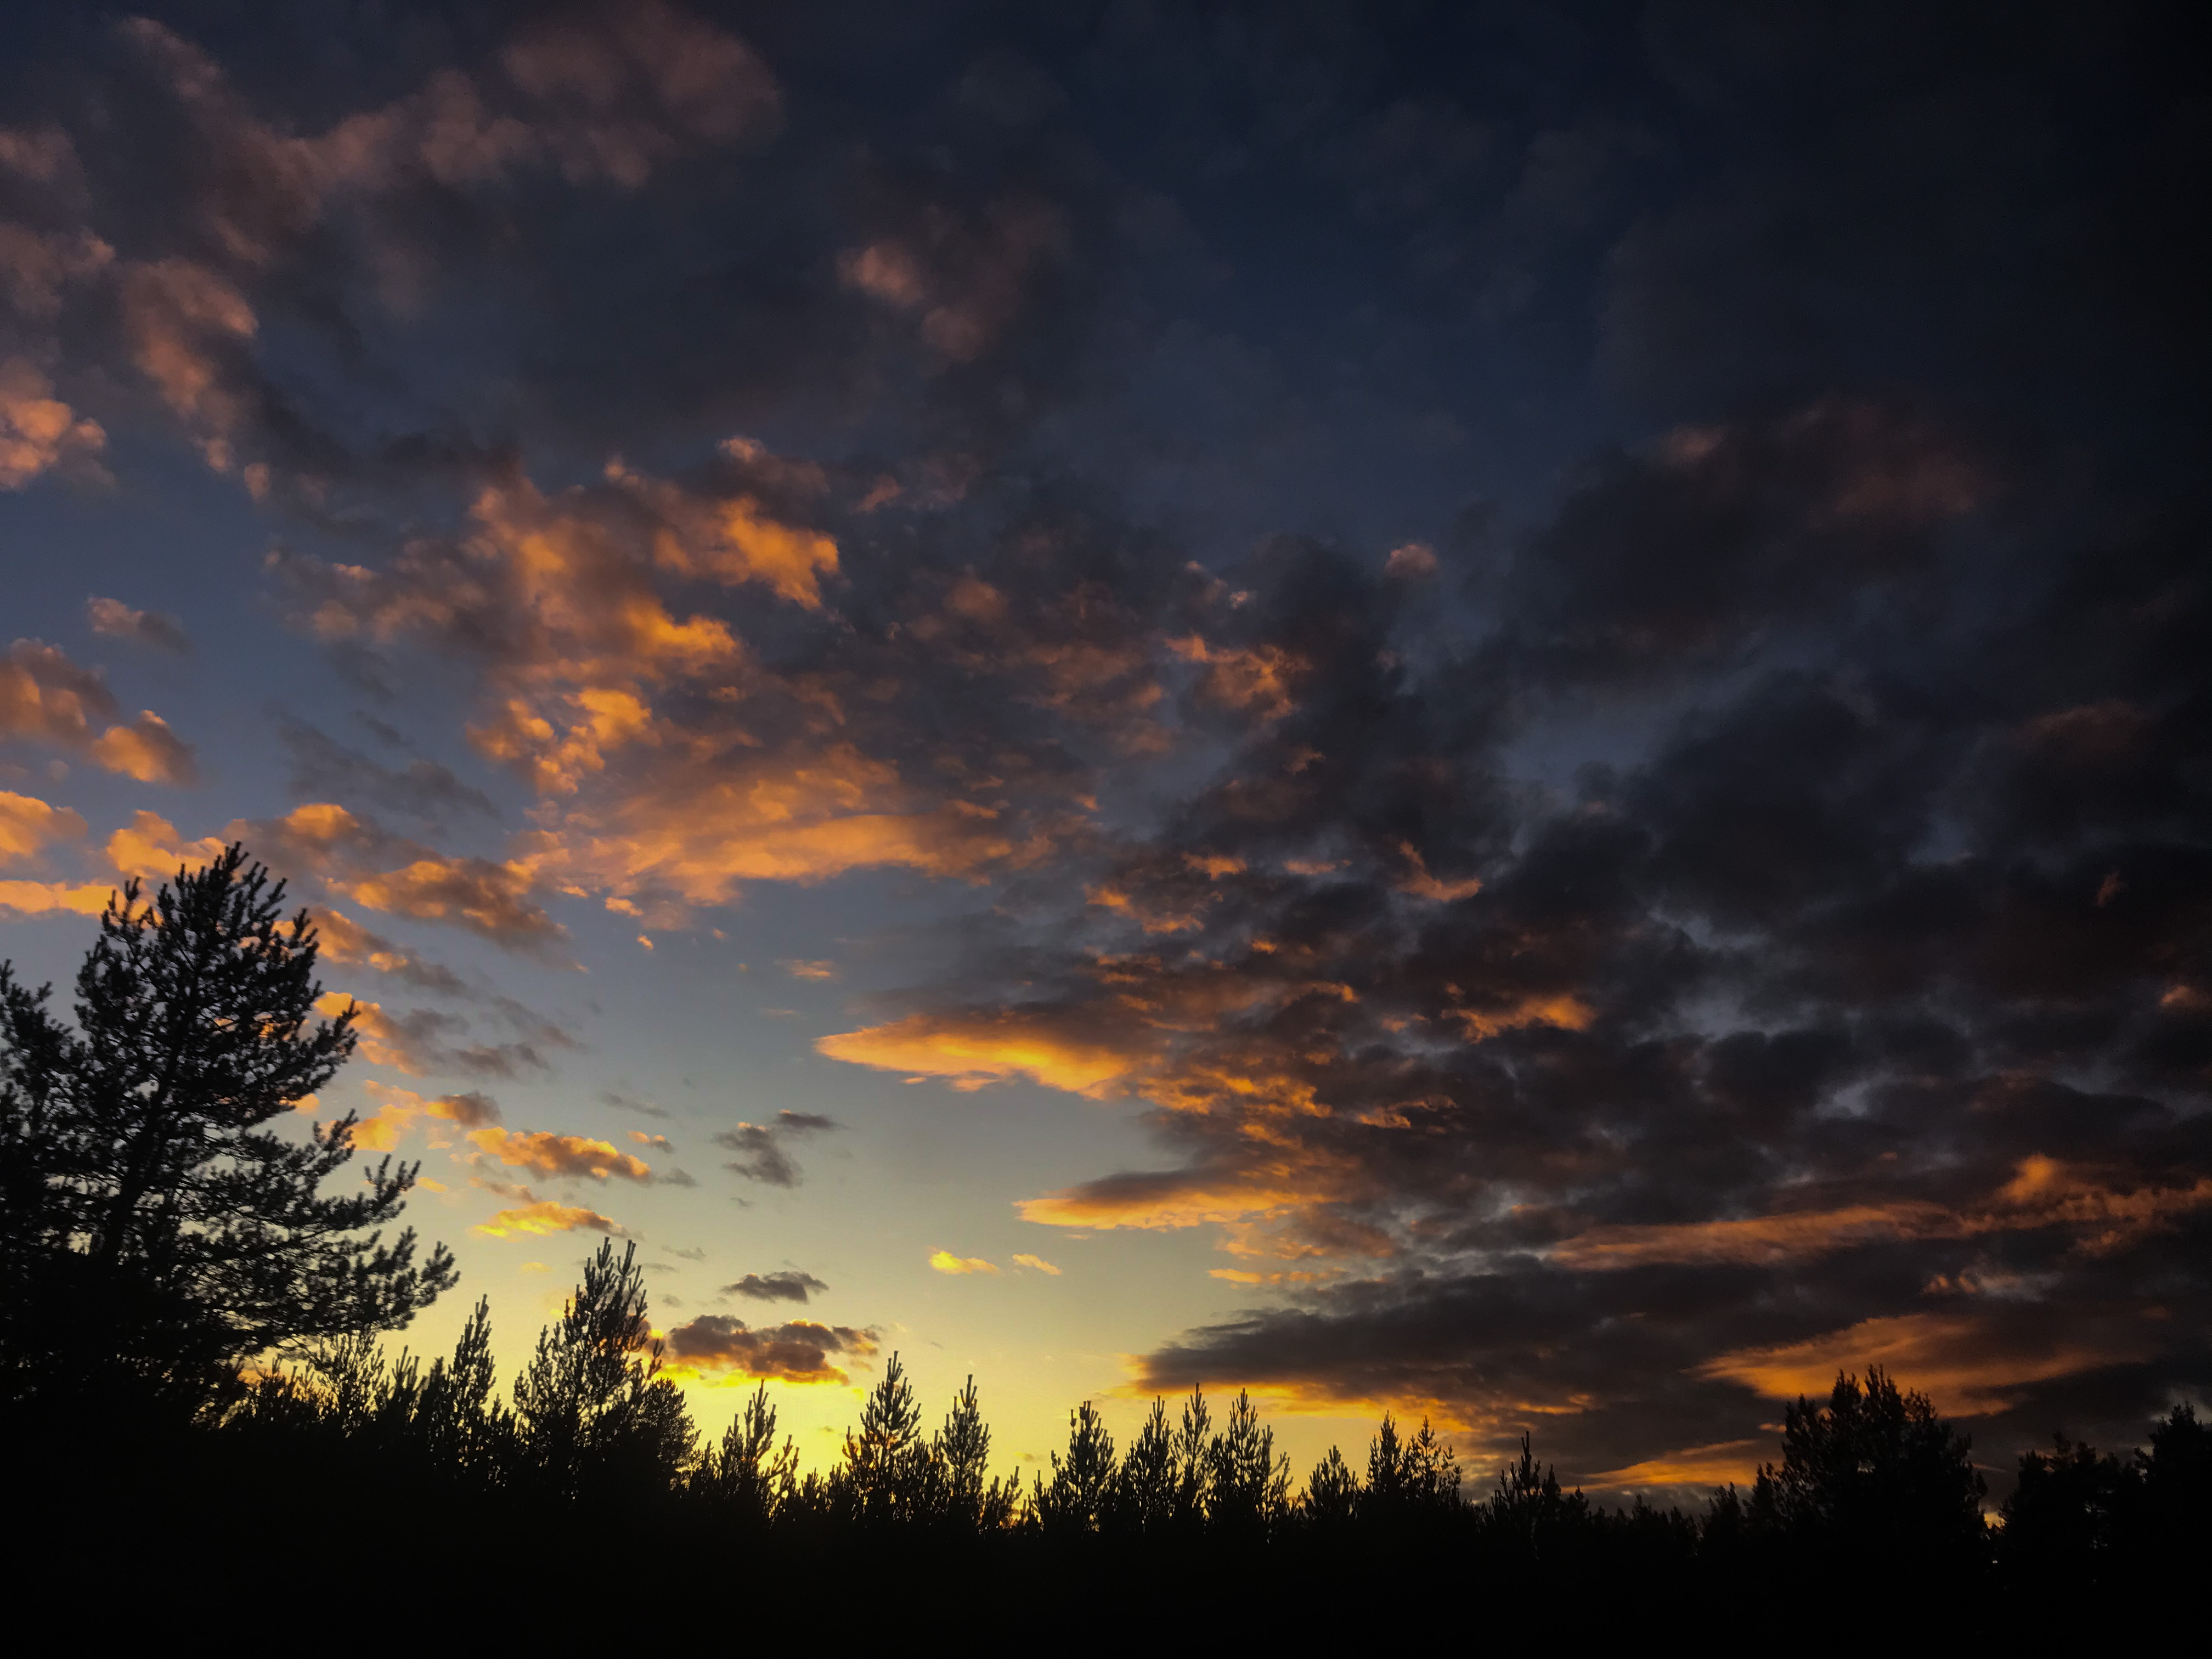 Fotografi av en solnedgång på hösten. I nederkanten av bilden syns svarta silhuetter av gran och tall mot en svagt grönfärgad horisont. Det gröna skifter från ljusblå till mörkblå i överkanten av fotografiet. Mott denna bakgrund syns lösa moln som färgas i persikofärgade nyanser av dagens sista solljus.